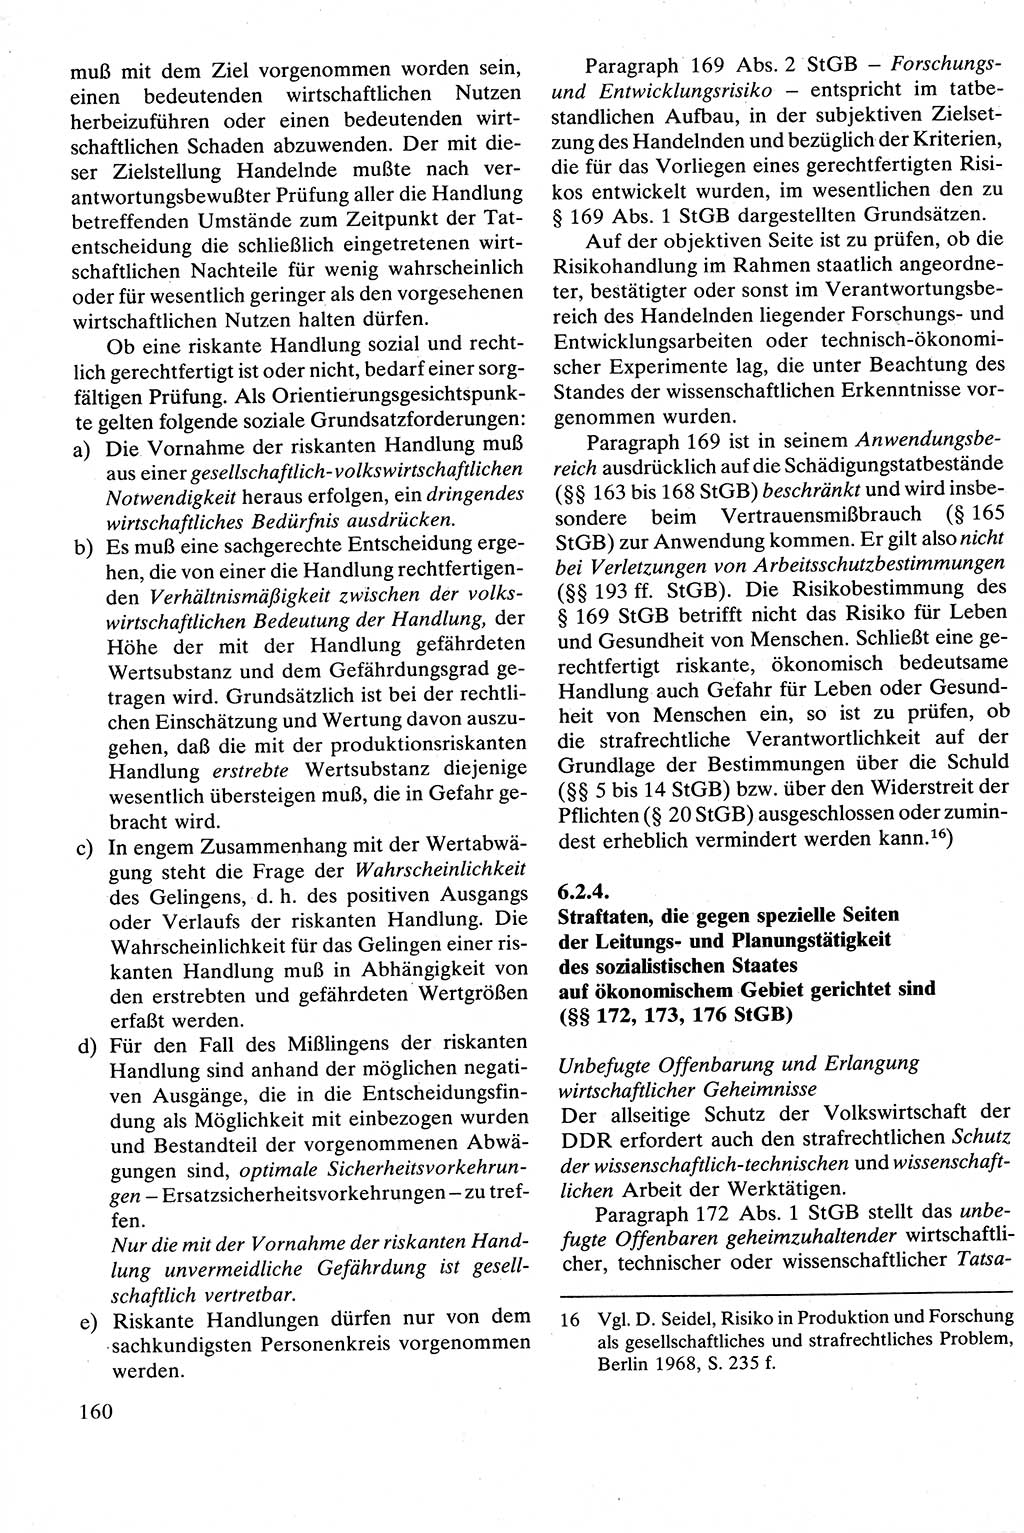 Strafrecht [Deutsche Demokratische Republik (DDR)], Besonderer Teil, Lehrbuch 1981, Seite 160 (Strafr. DDR BT Lb. 1981, S. 160)